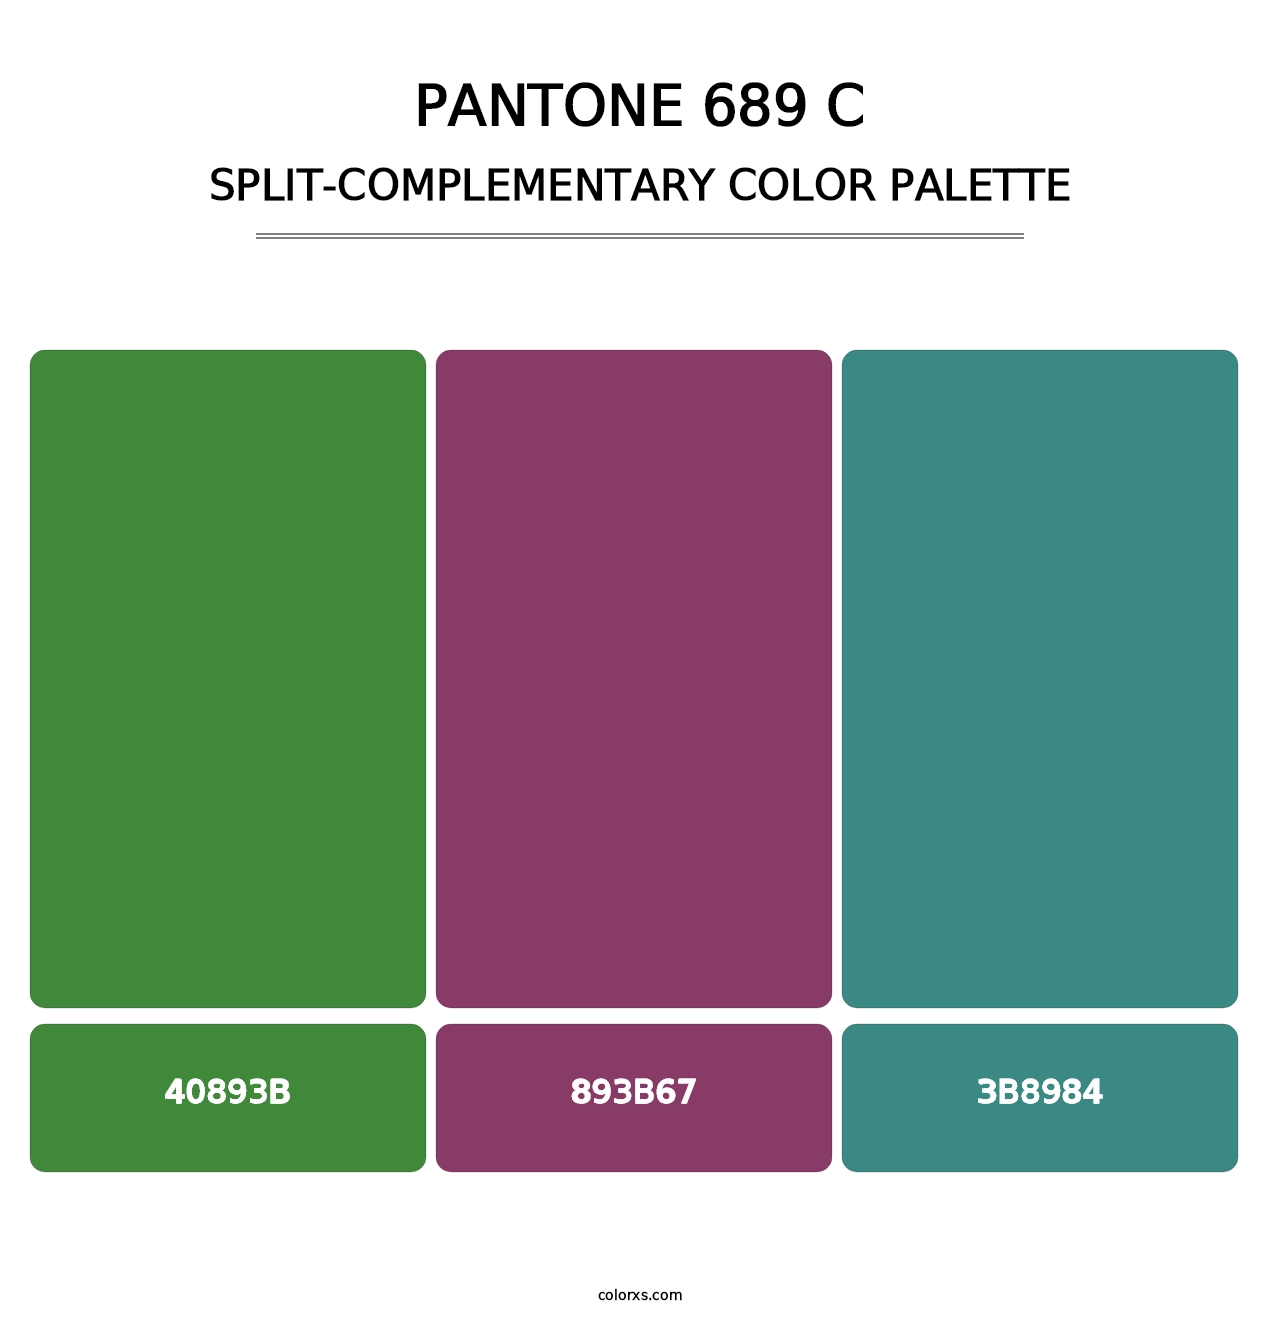 PANTONE 689 C - Split-Complementary Color Palette